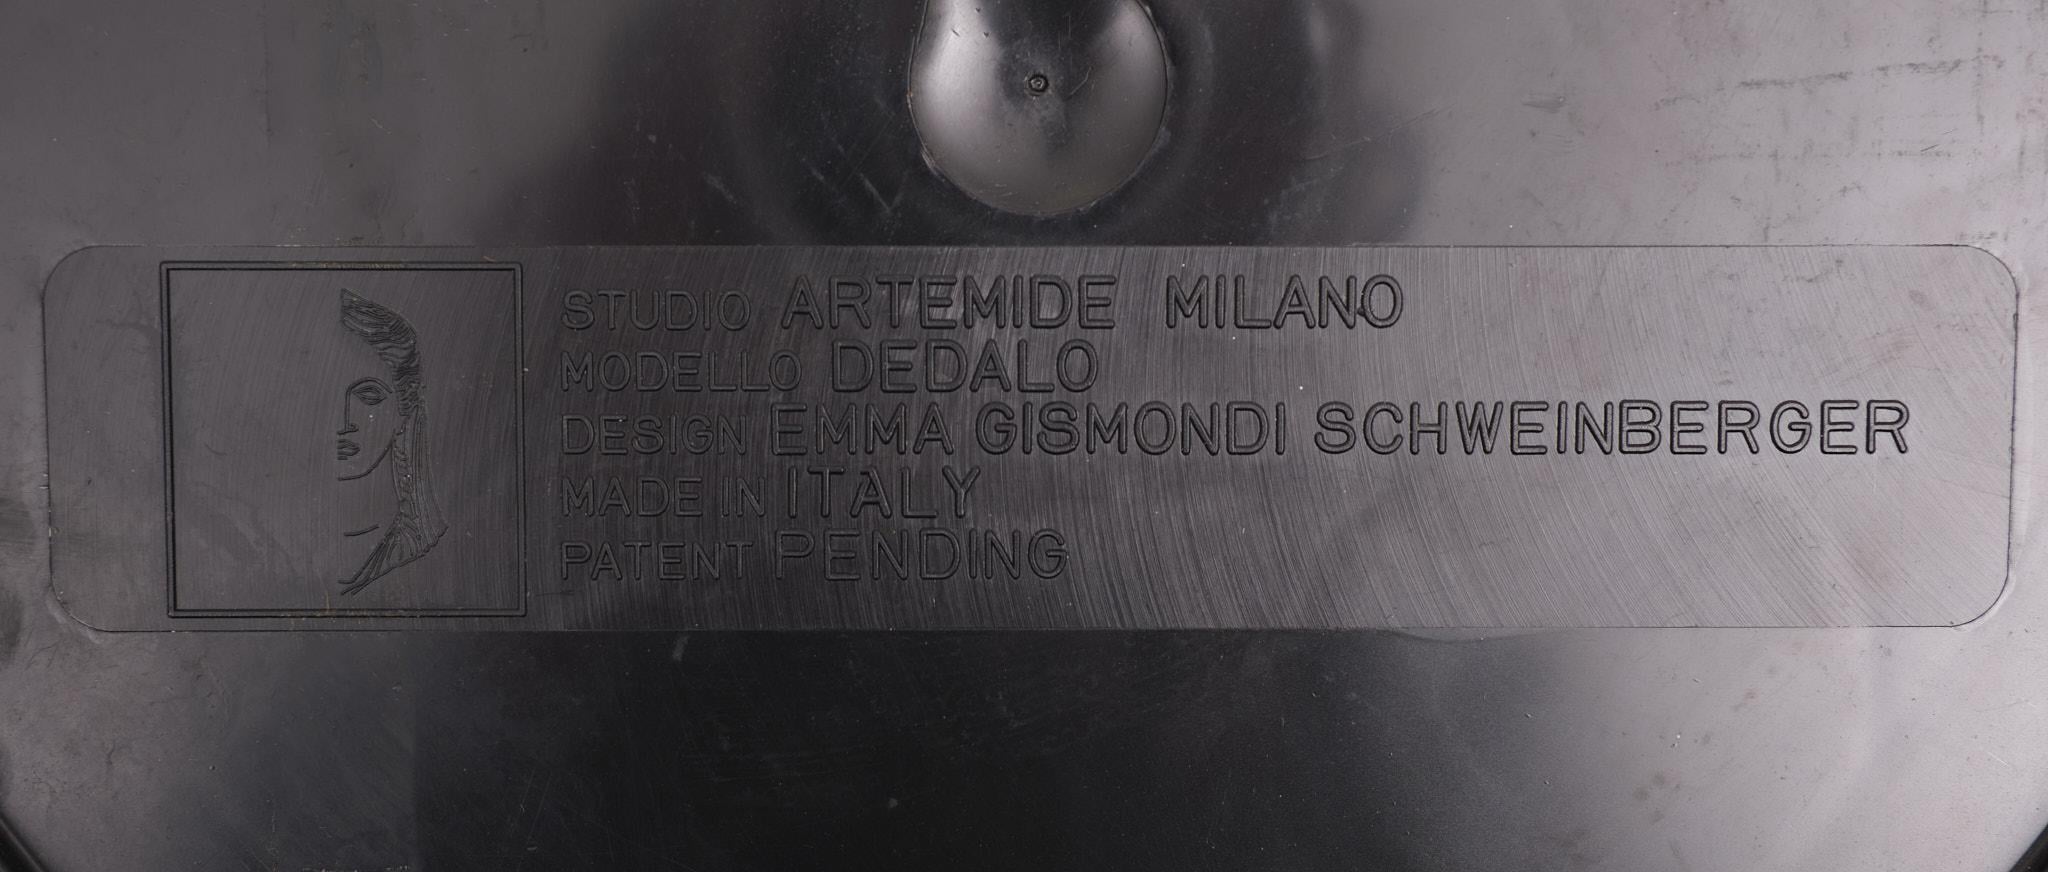 Emma Gismondi's Umbrella Holder for Artemide 1960s Italy In Good Condition For Sale In Den Haag, NL